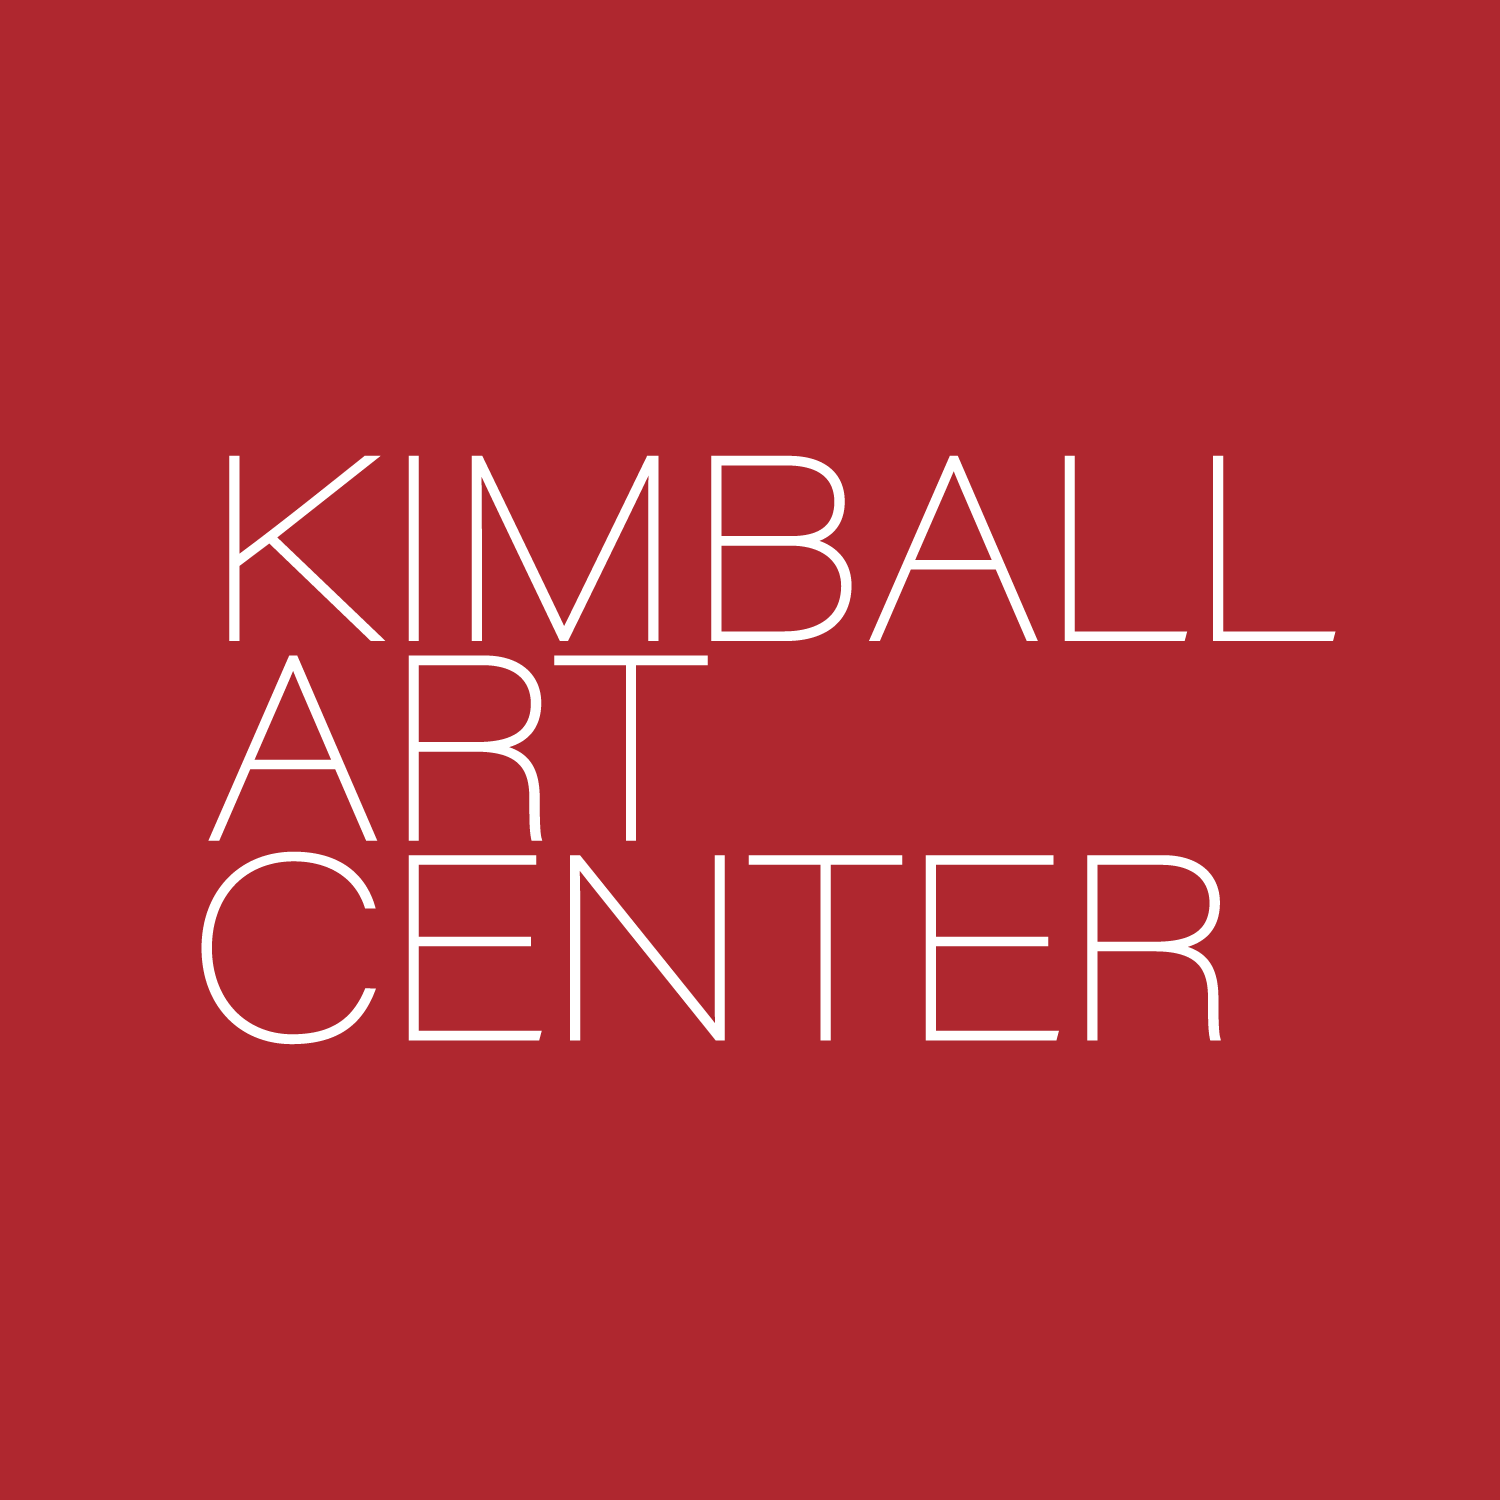 Company logo of Kimball Art Center